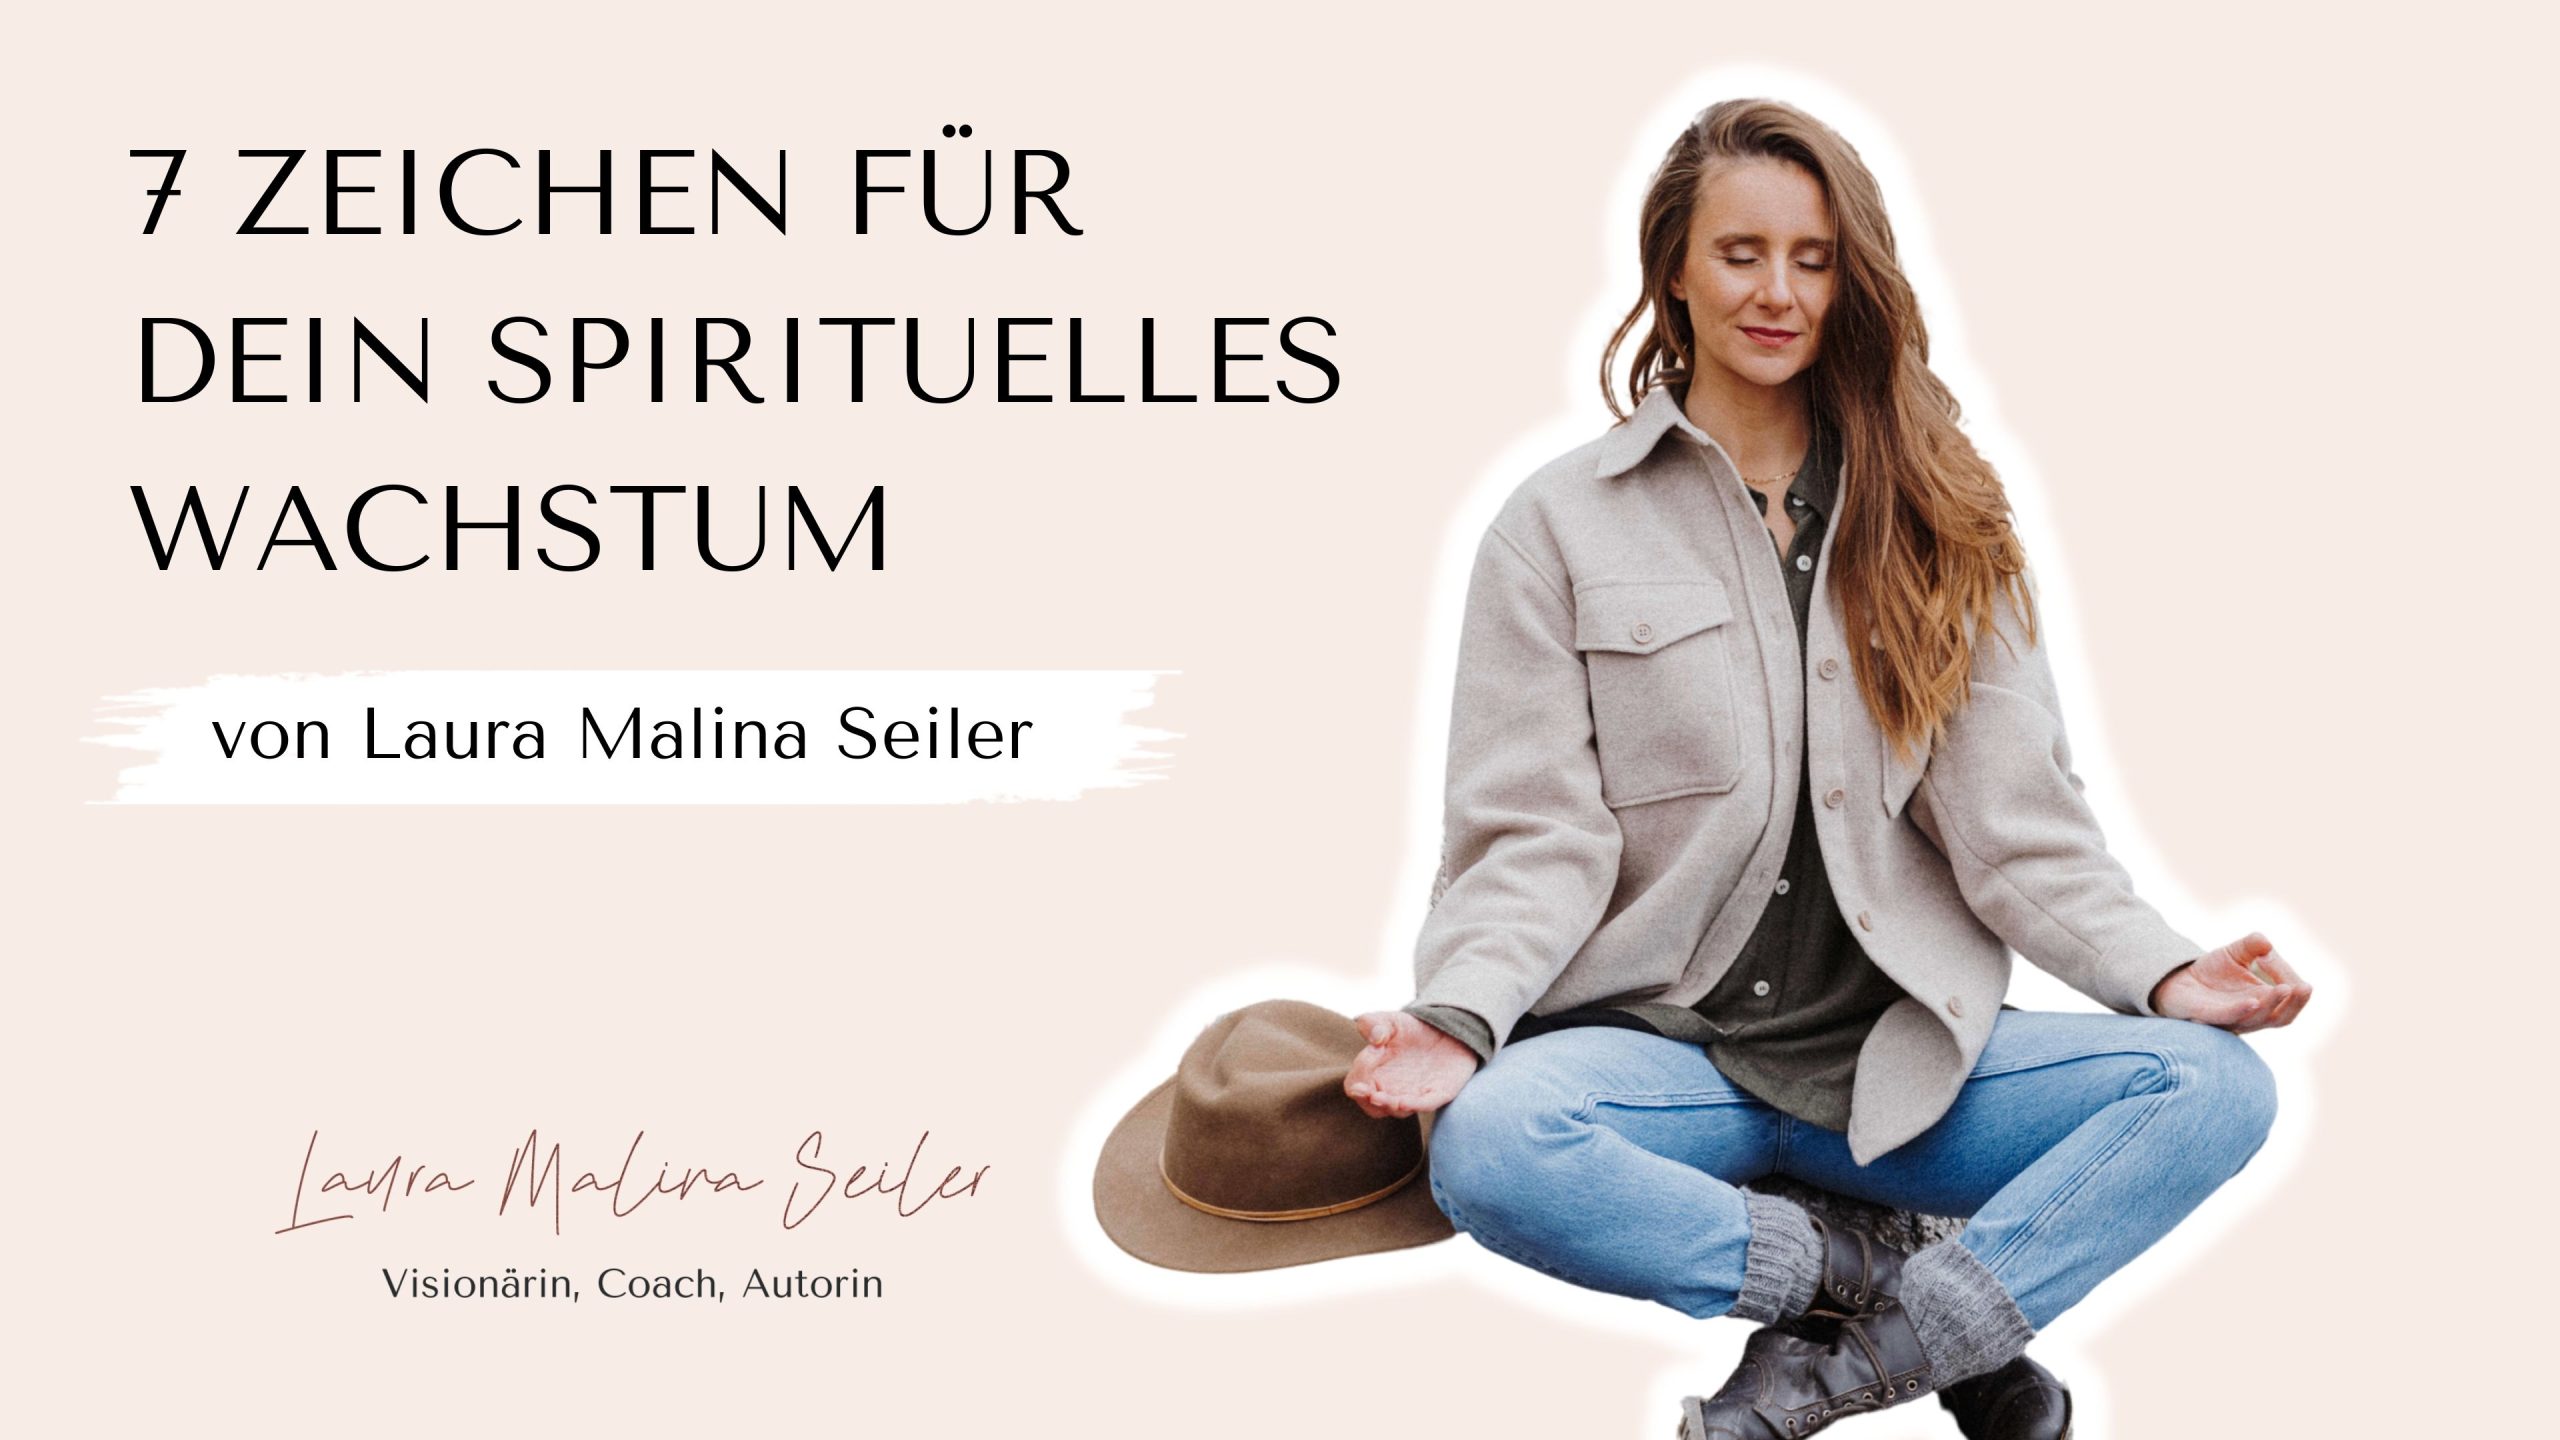 7 Zeichen für spirituelle Wachstum - Laura Seiler Header